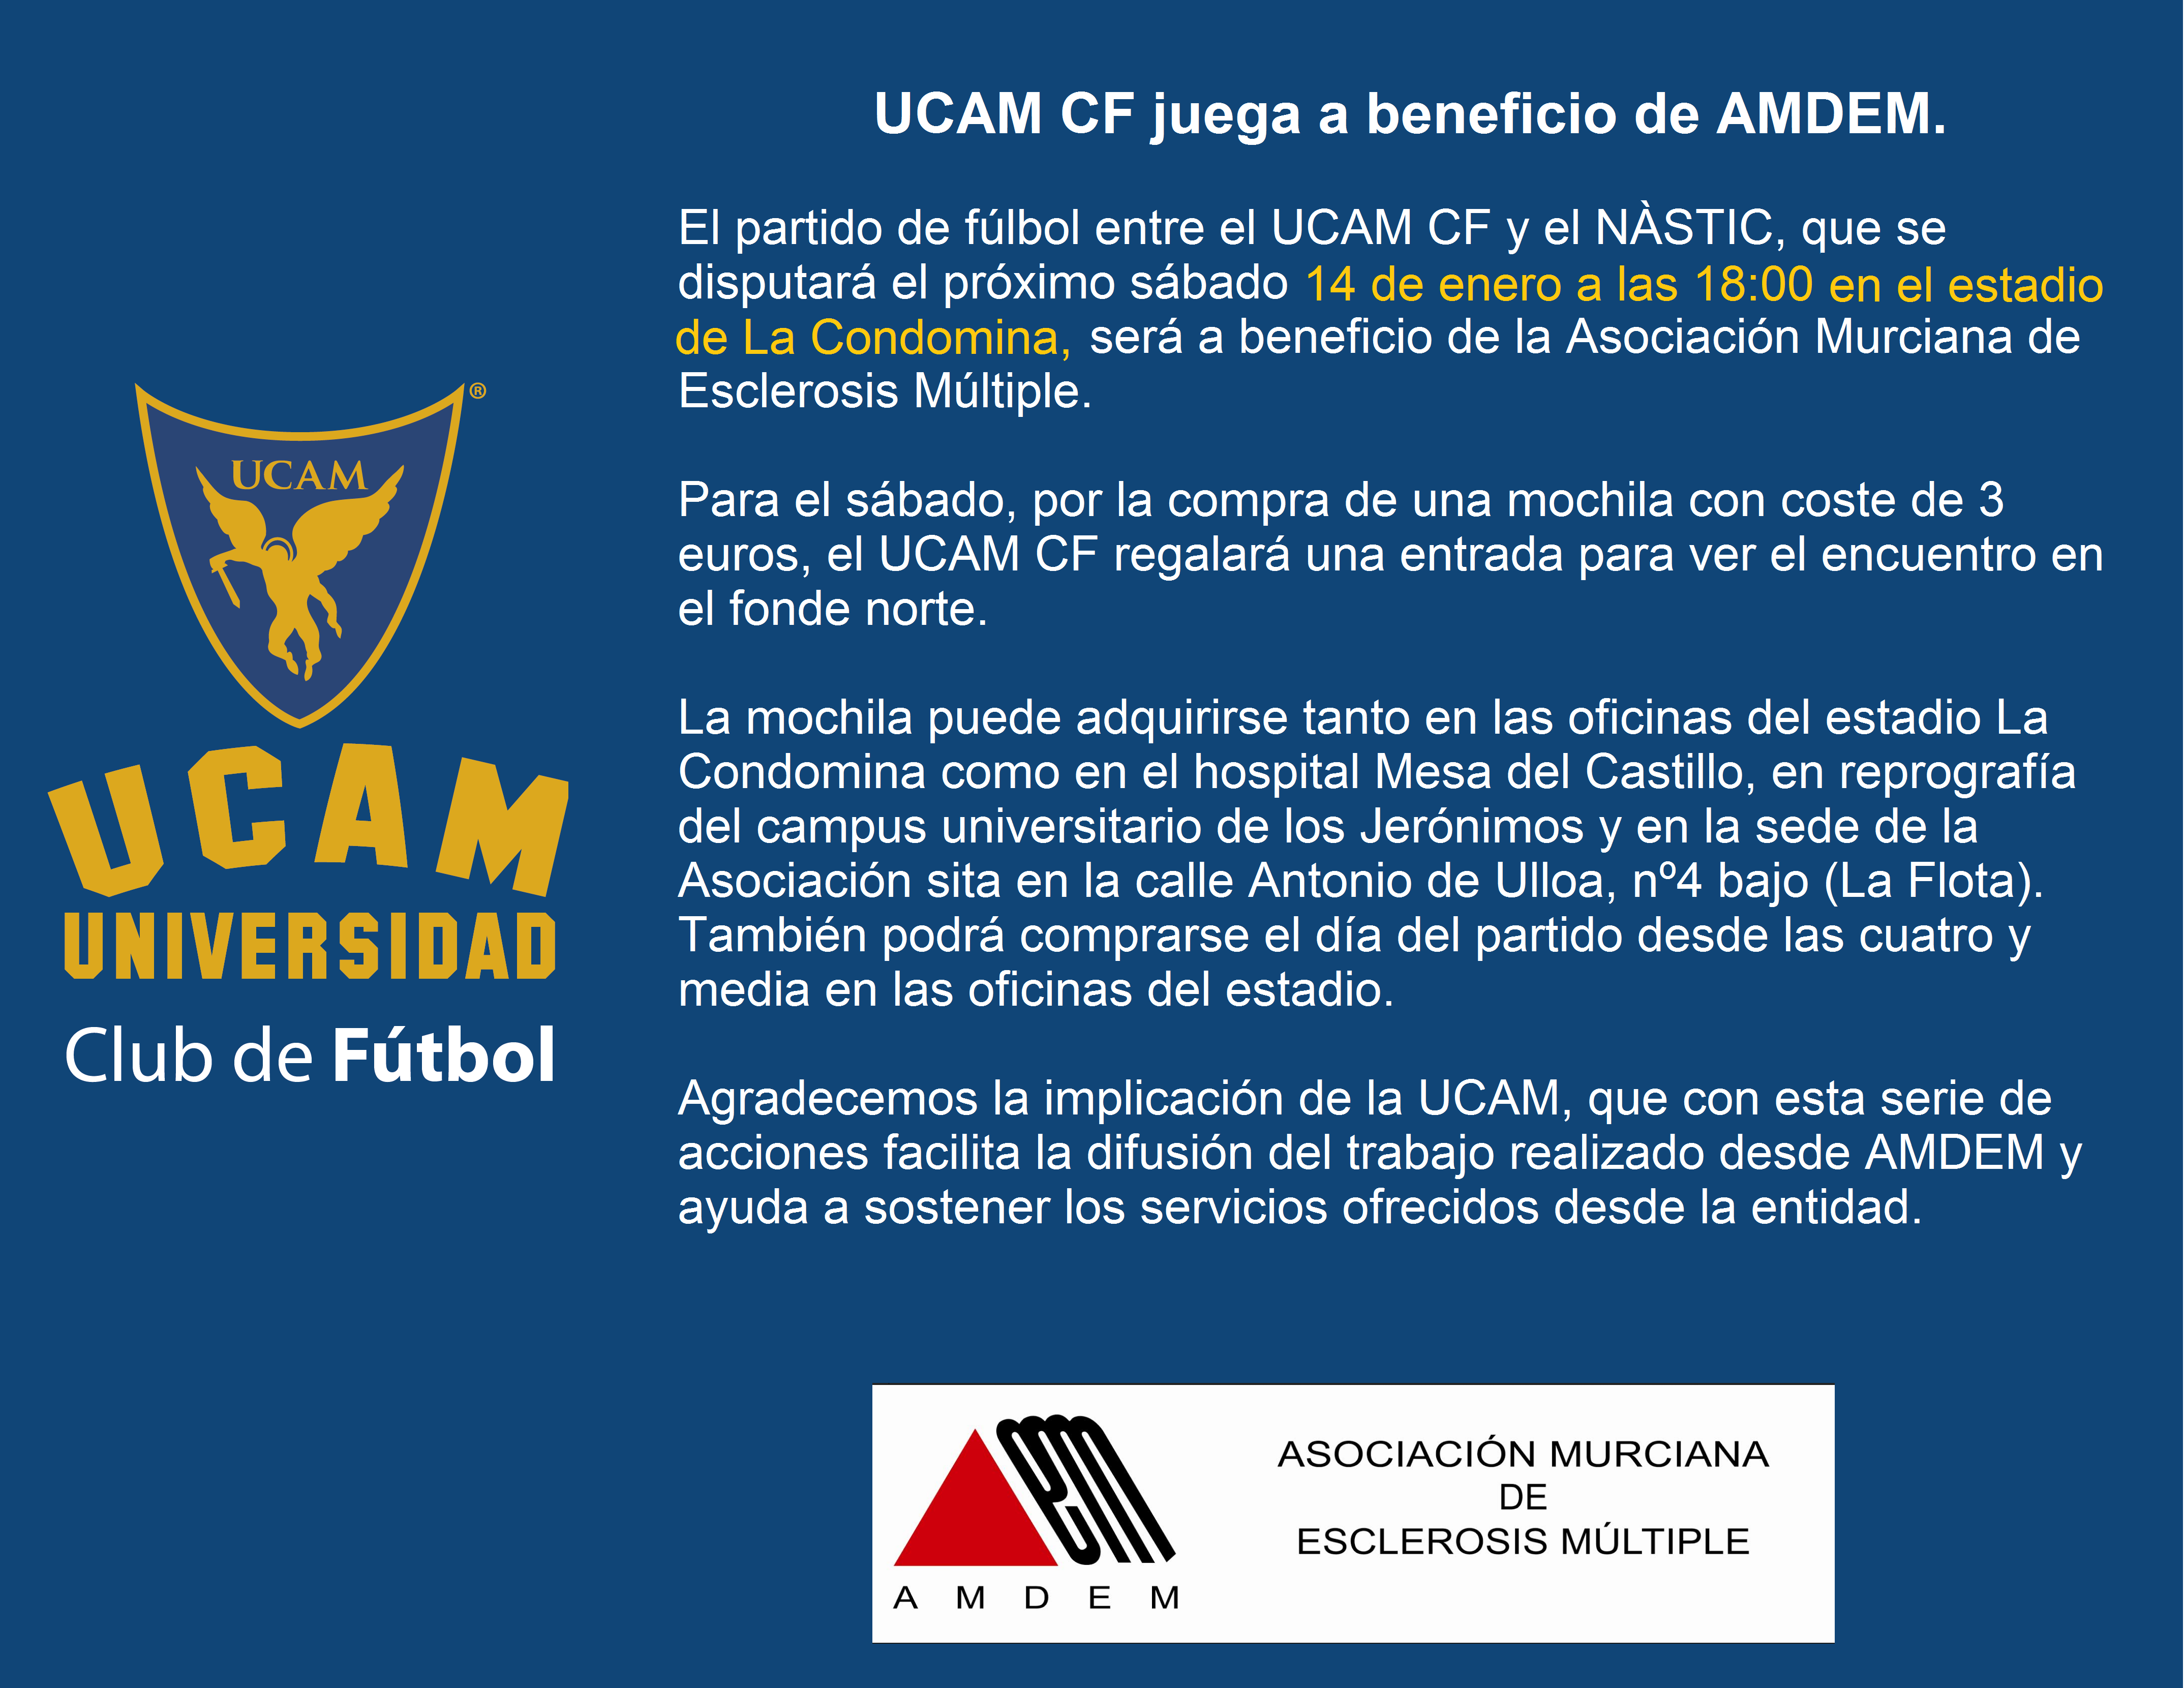 UCAM CF juega en beneficio de AMDEM.